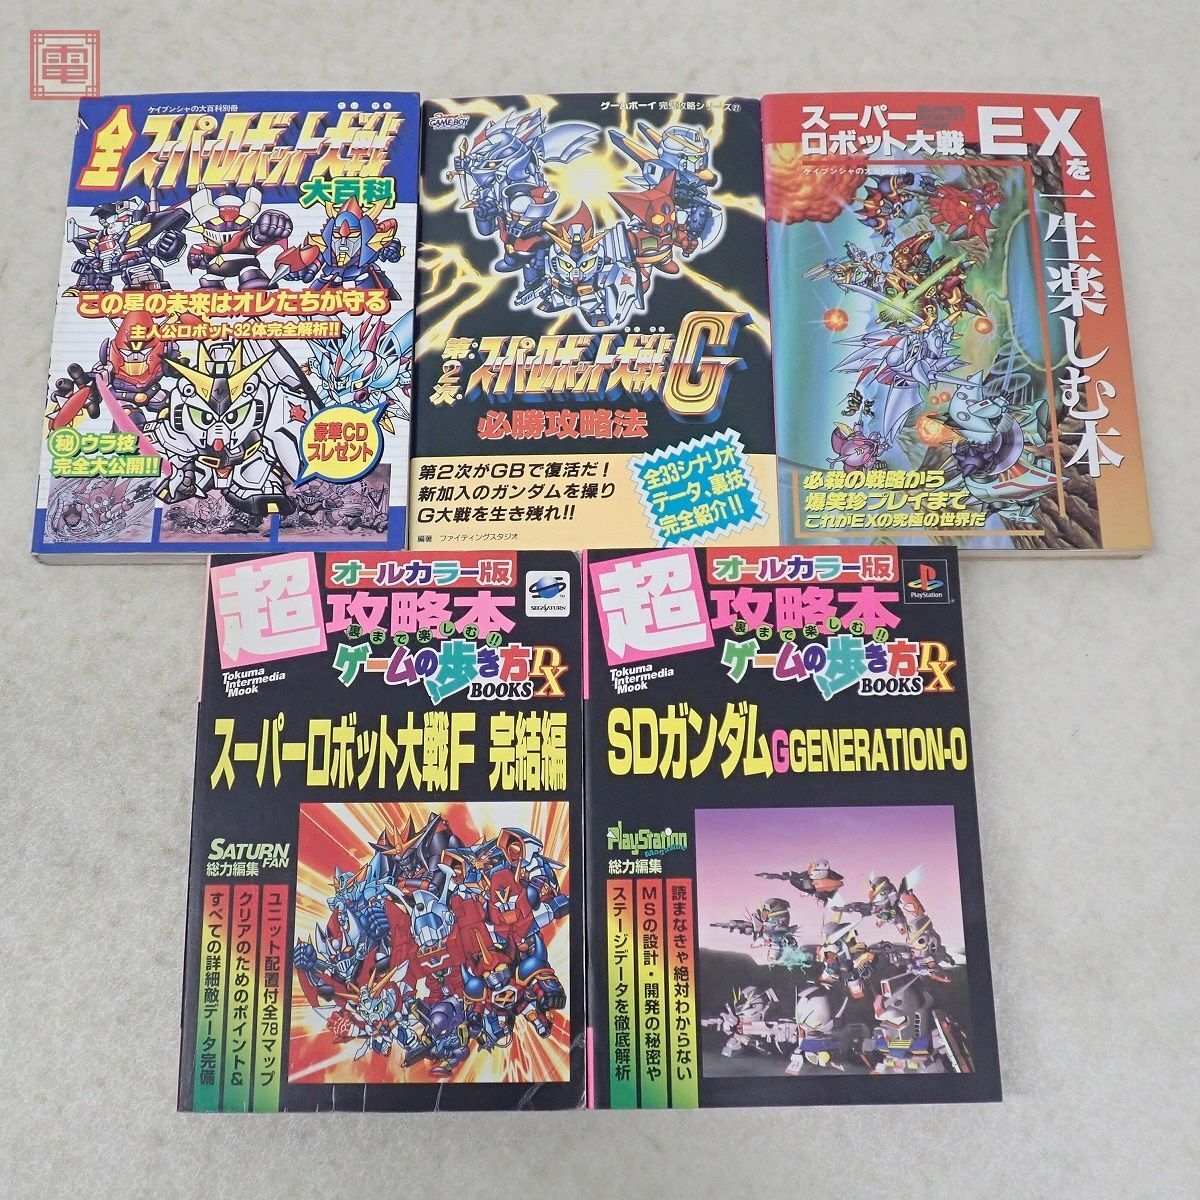  capture book Gundam "Super-Robot Great War" relation SFC PS PSP no. 2 next "Super-Robot Great War" Z The * Battle master 2 etc. 28 pcs. set [20